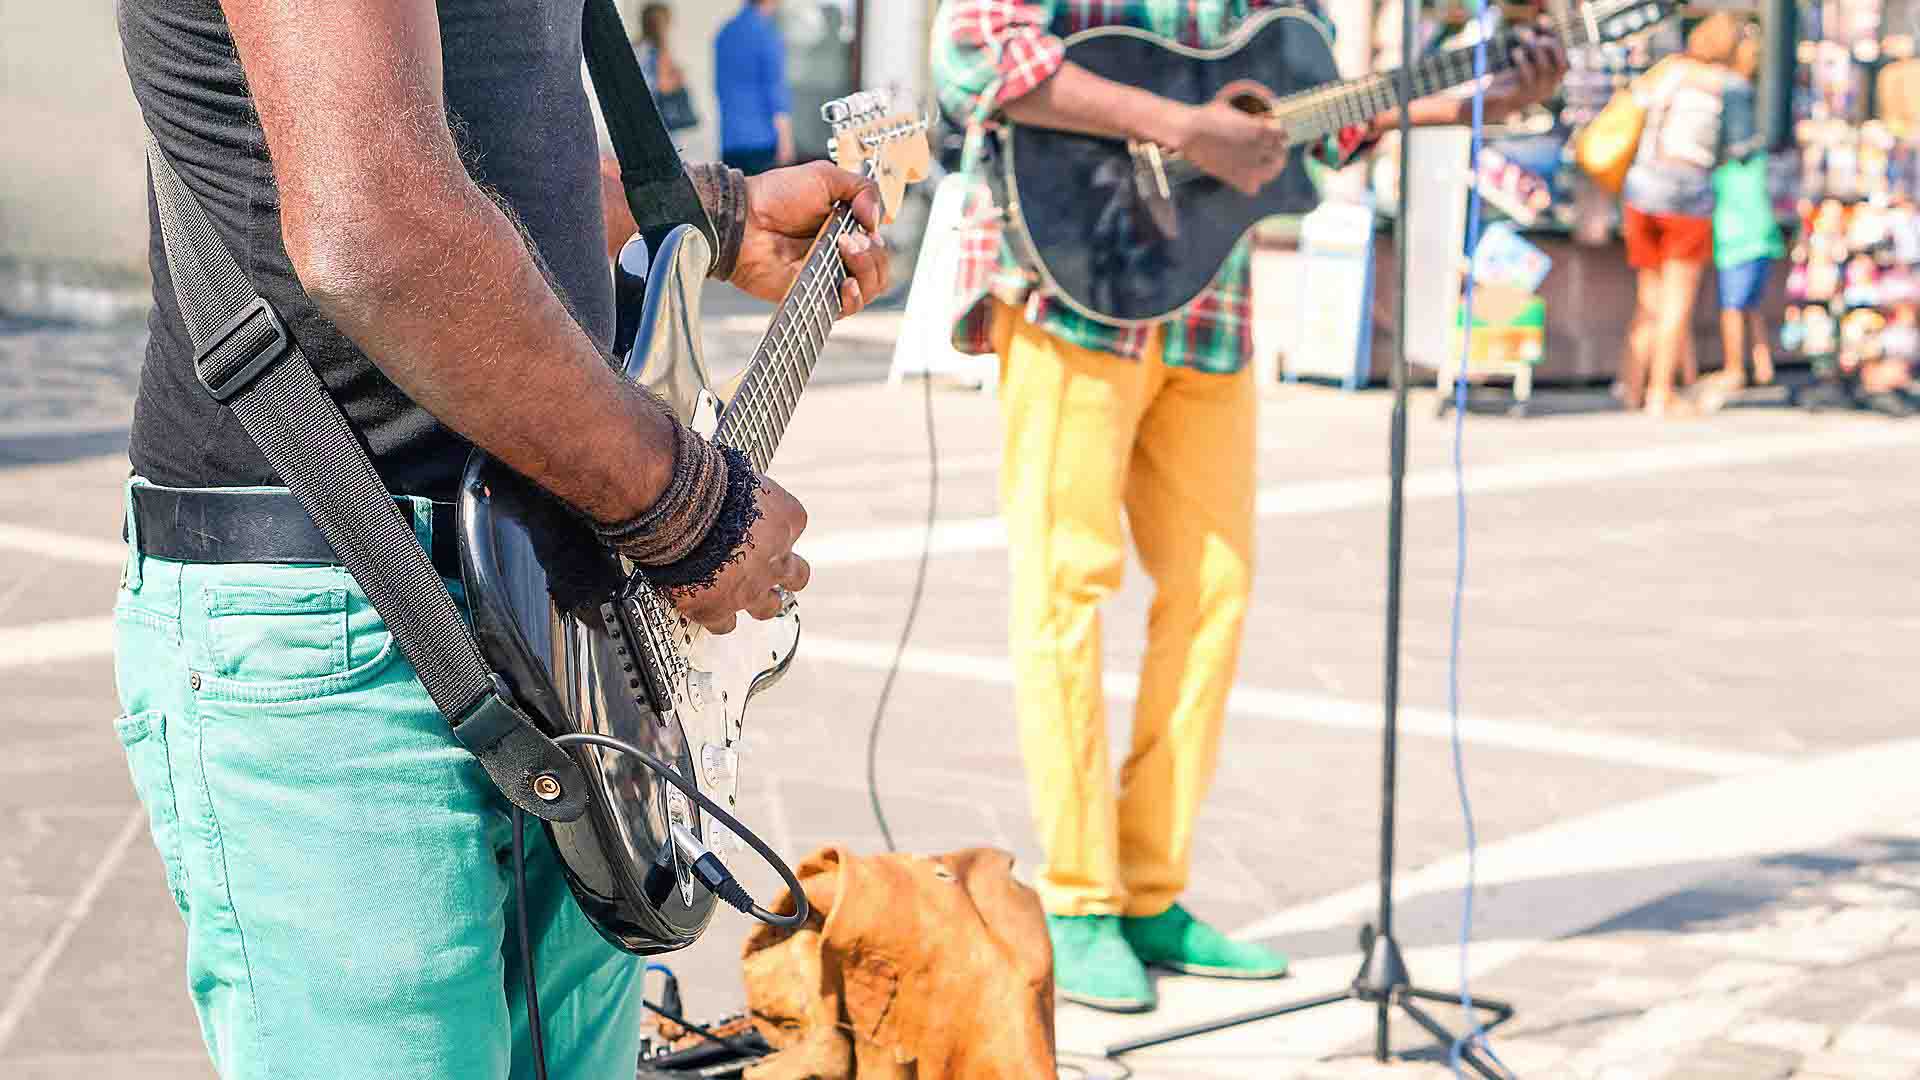 falmouth-jamaica-reggae-street-musicians-guitars